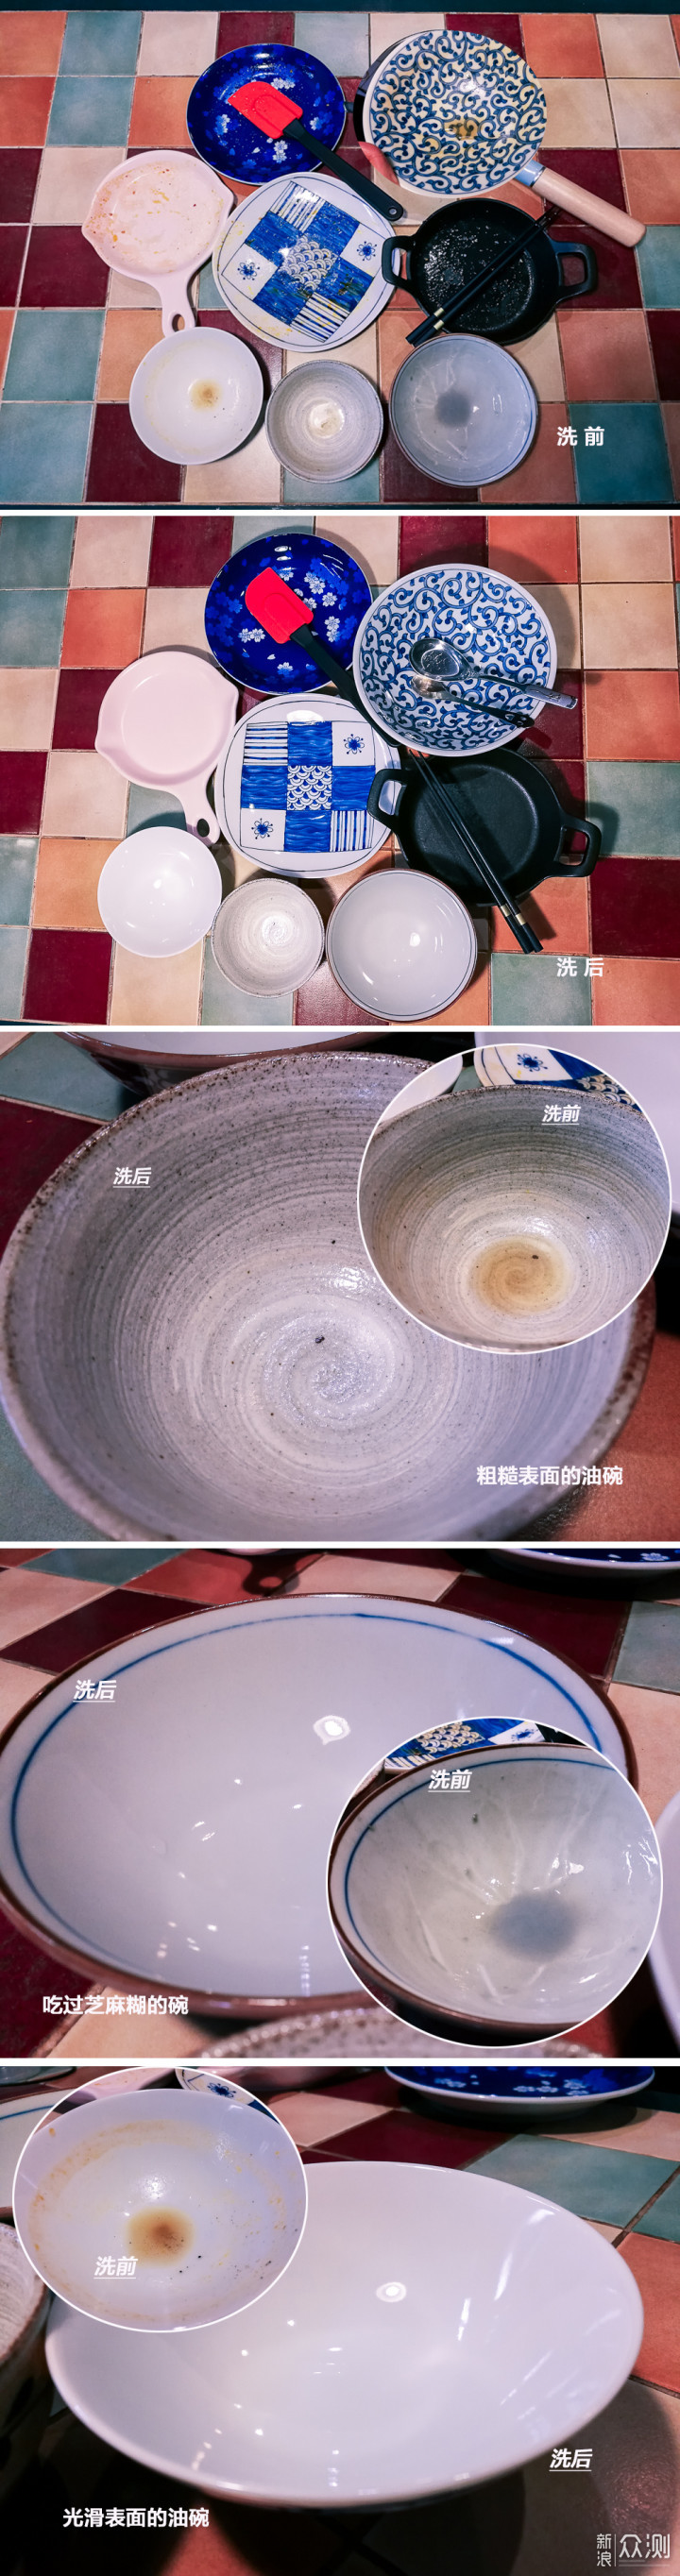 #2020# 九阳免安装智能家用洗碗机测评体验_新浪众测